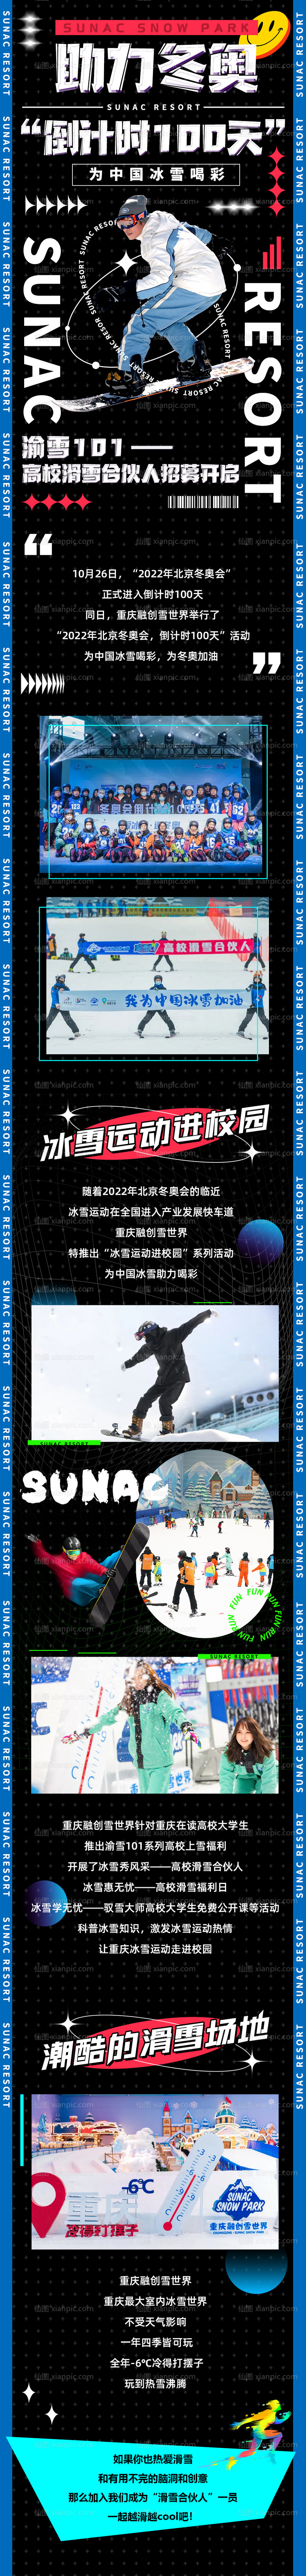 素材乐-潮流酸性滑雪冬奥海报长图